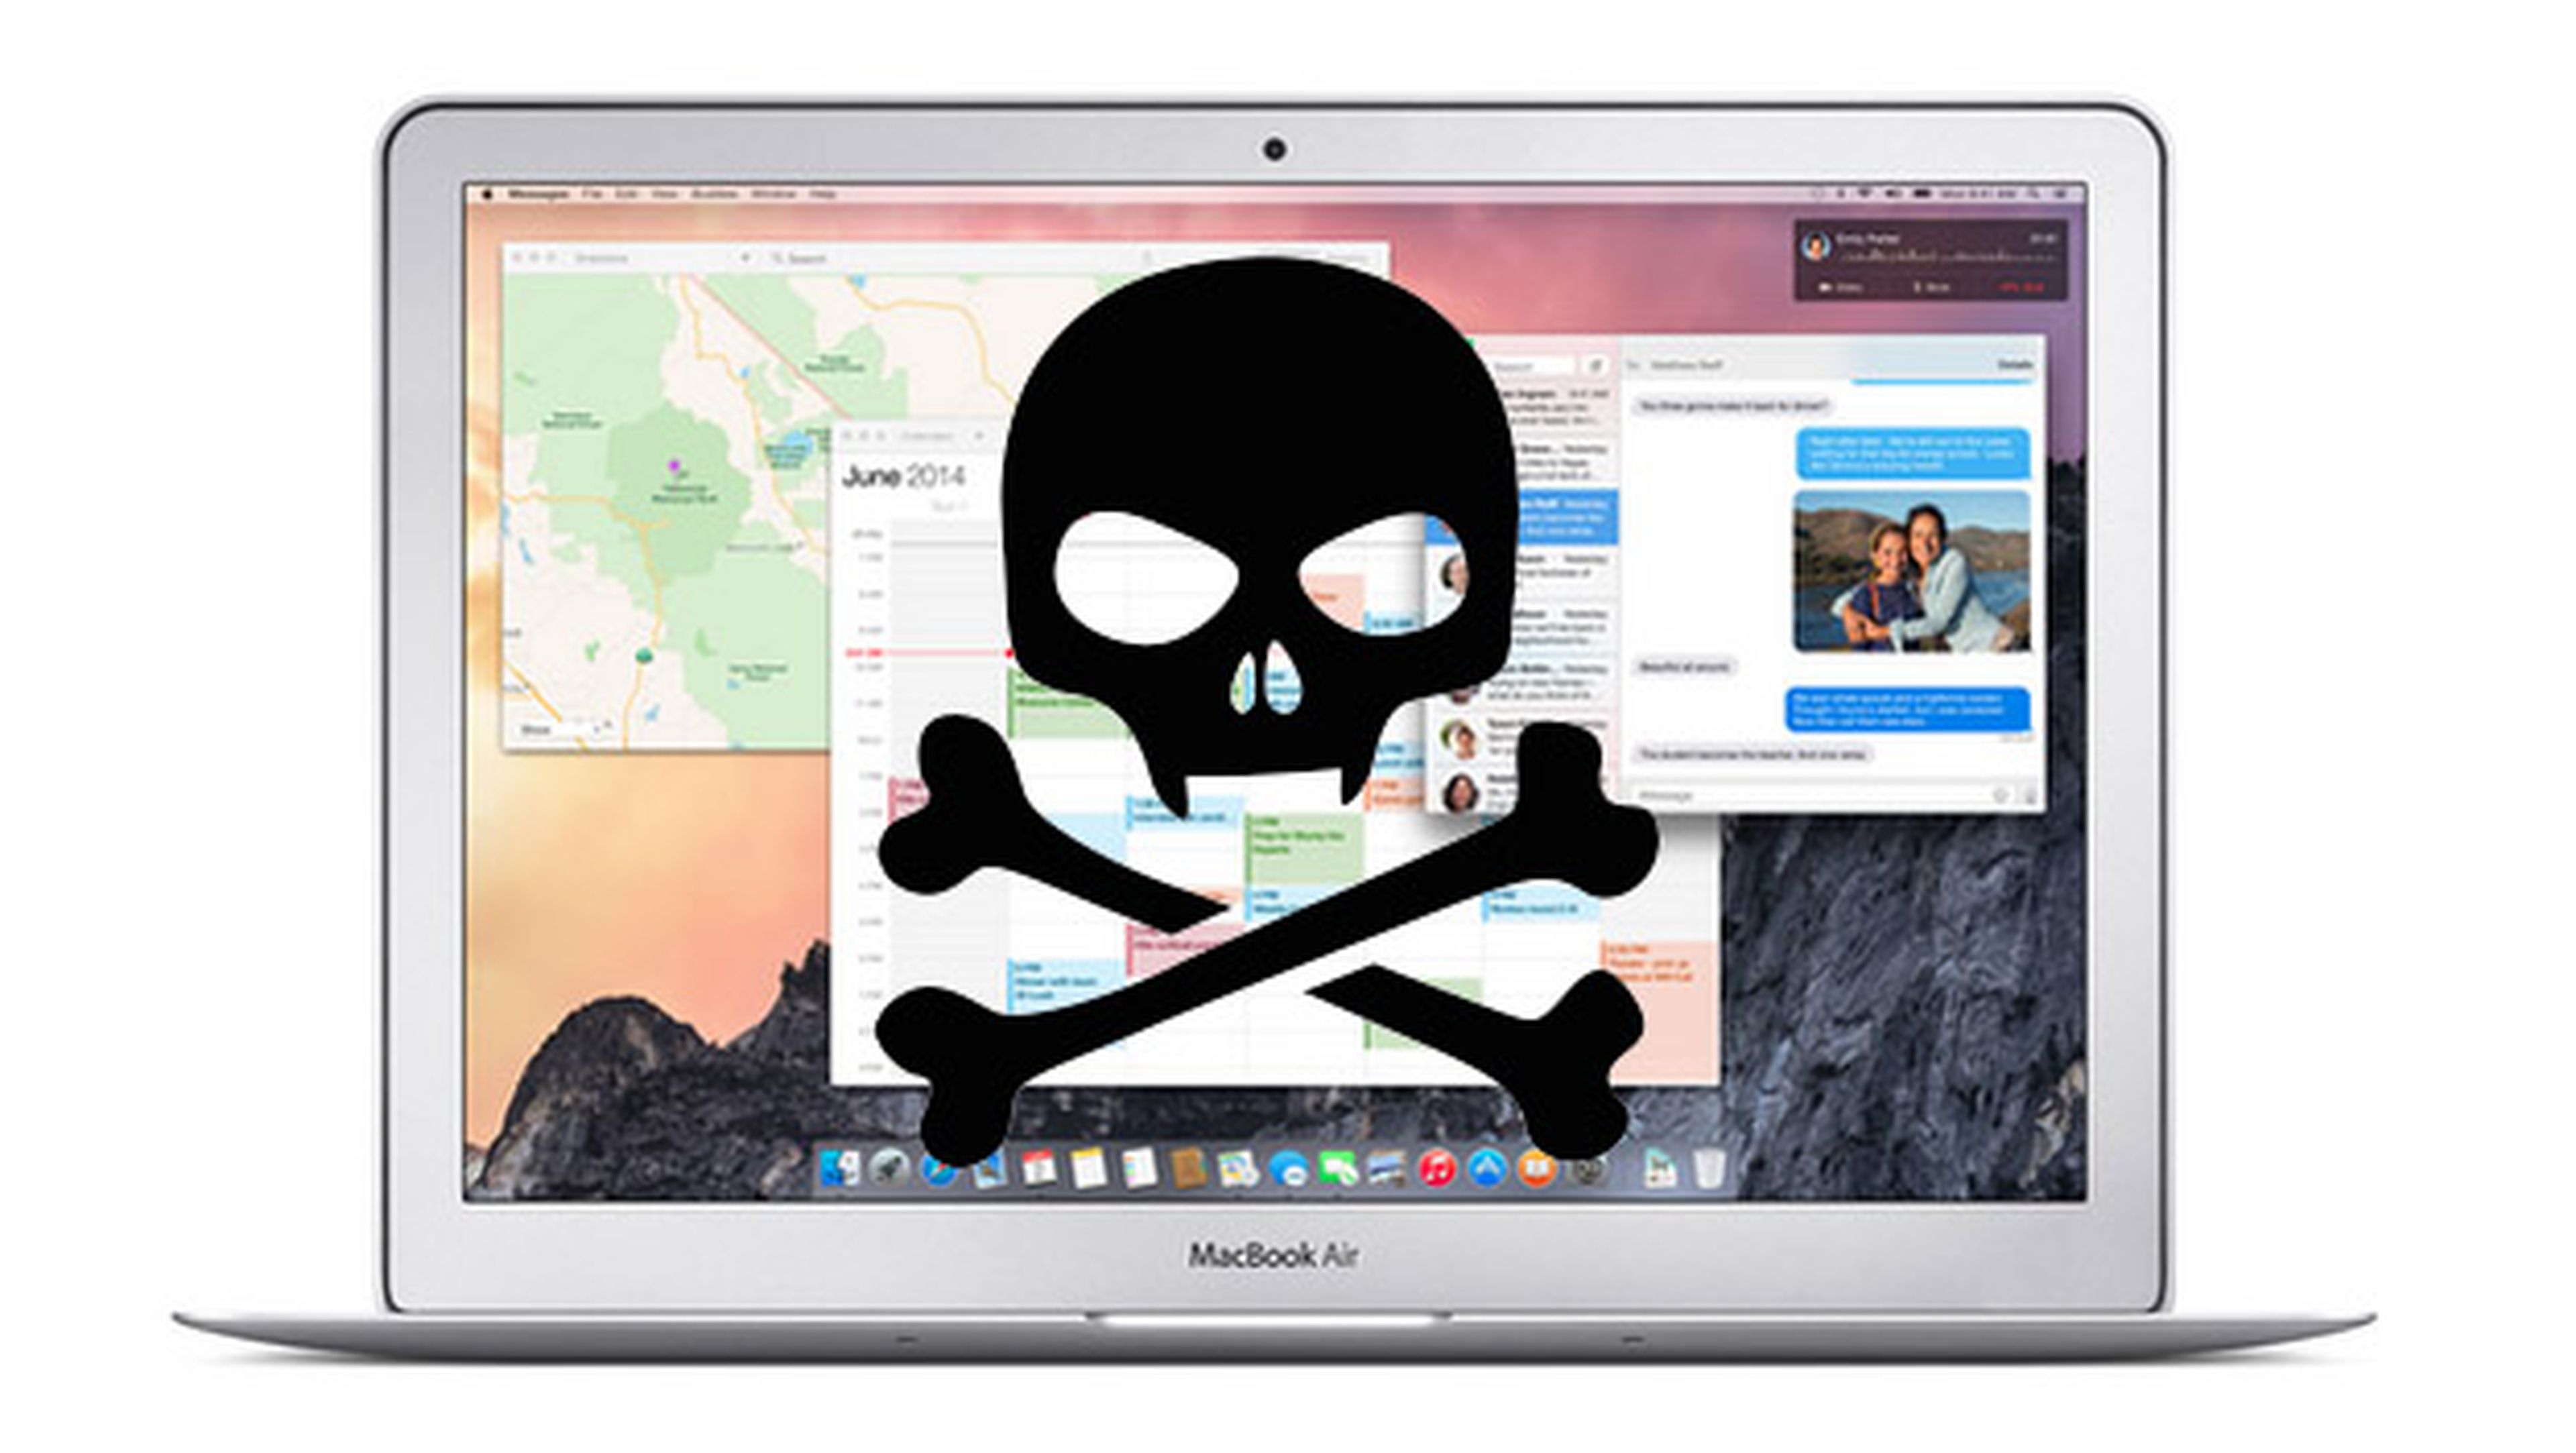 Adolescente descubre dos vulnerabilidades Mac OS X